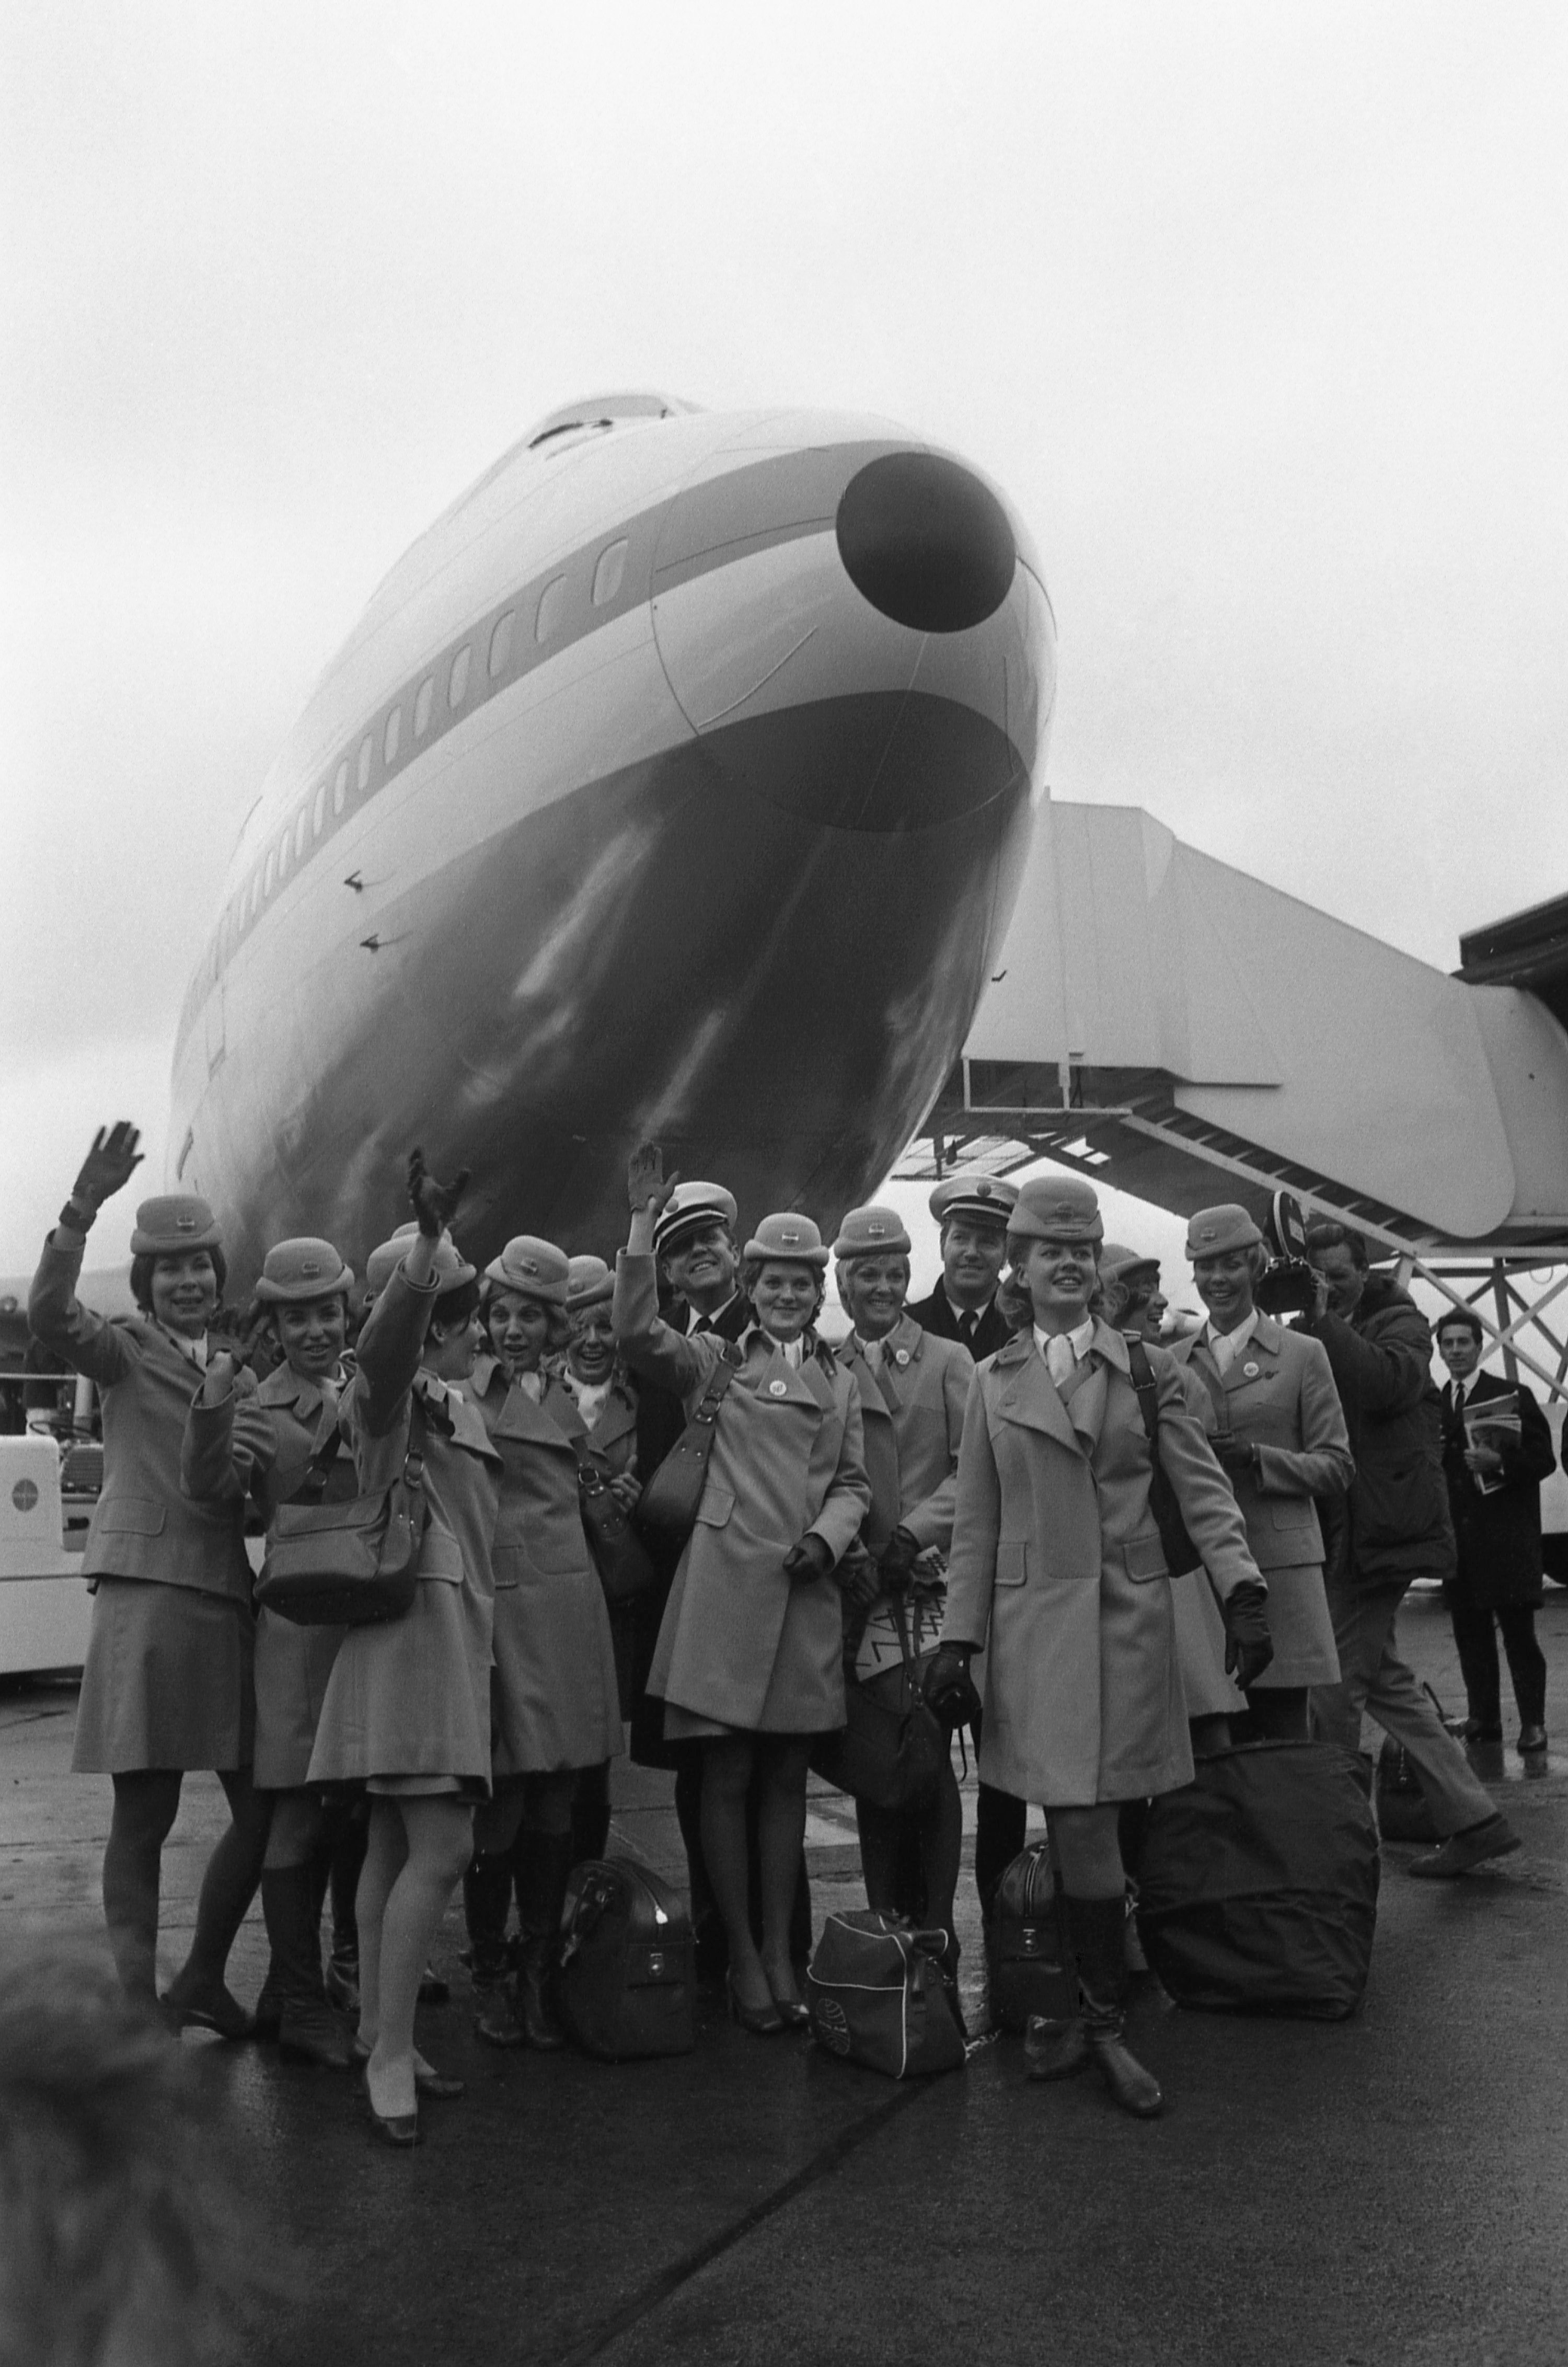 Awak Boeing 747 Jumbo Jet berpose di depan hidung pesawat di Bandara Heathrow London, di Inggris, 12 Januari 1970. (Foto AP)